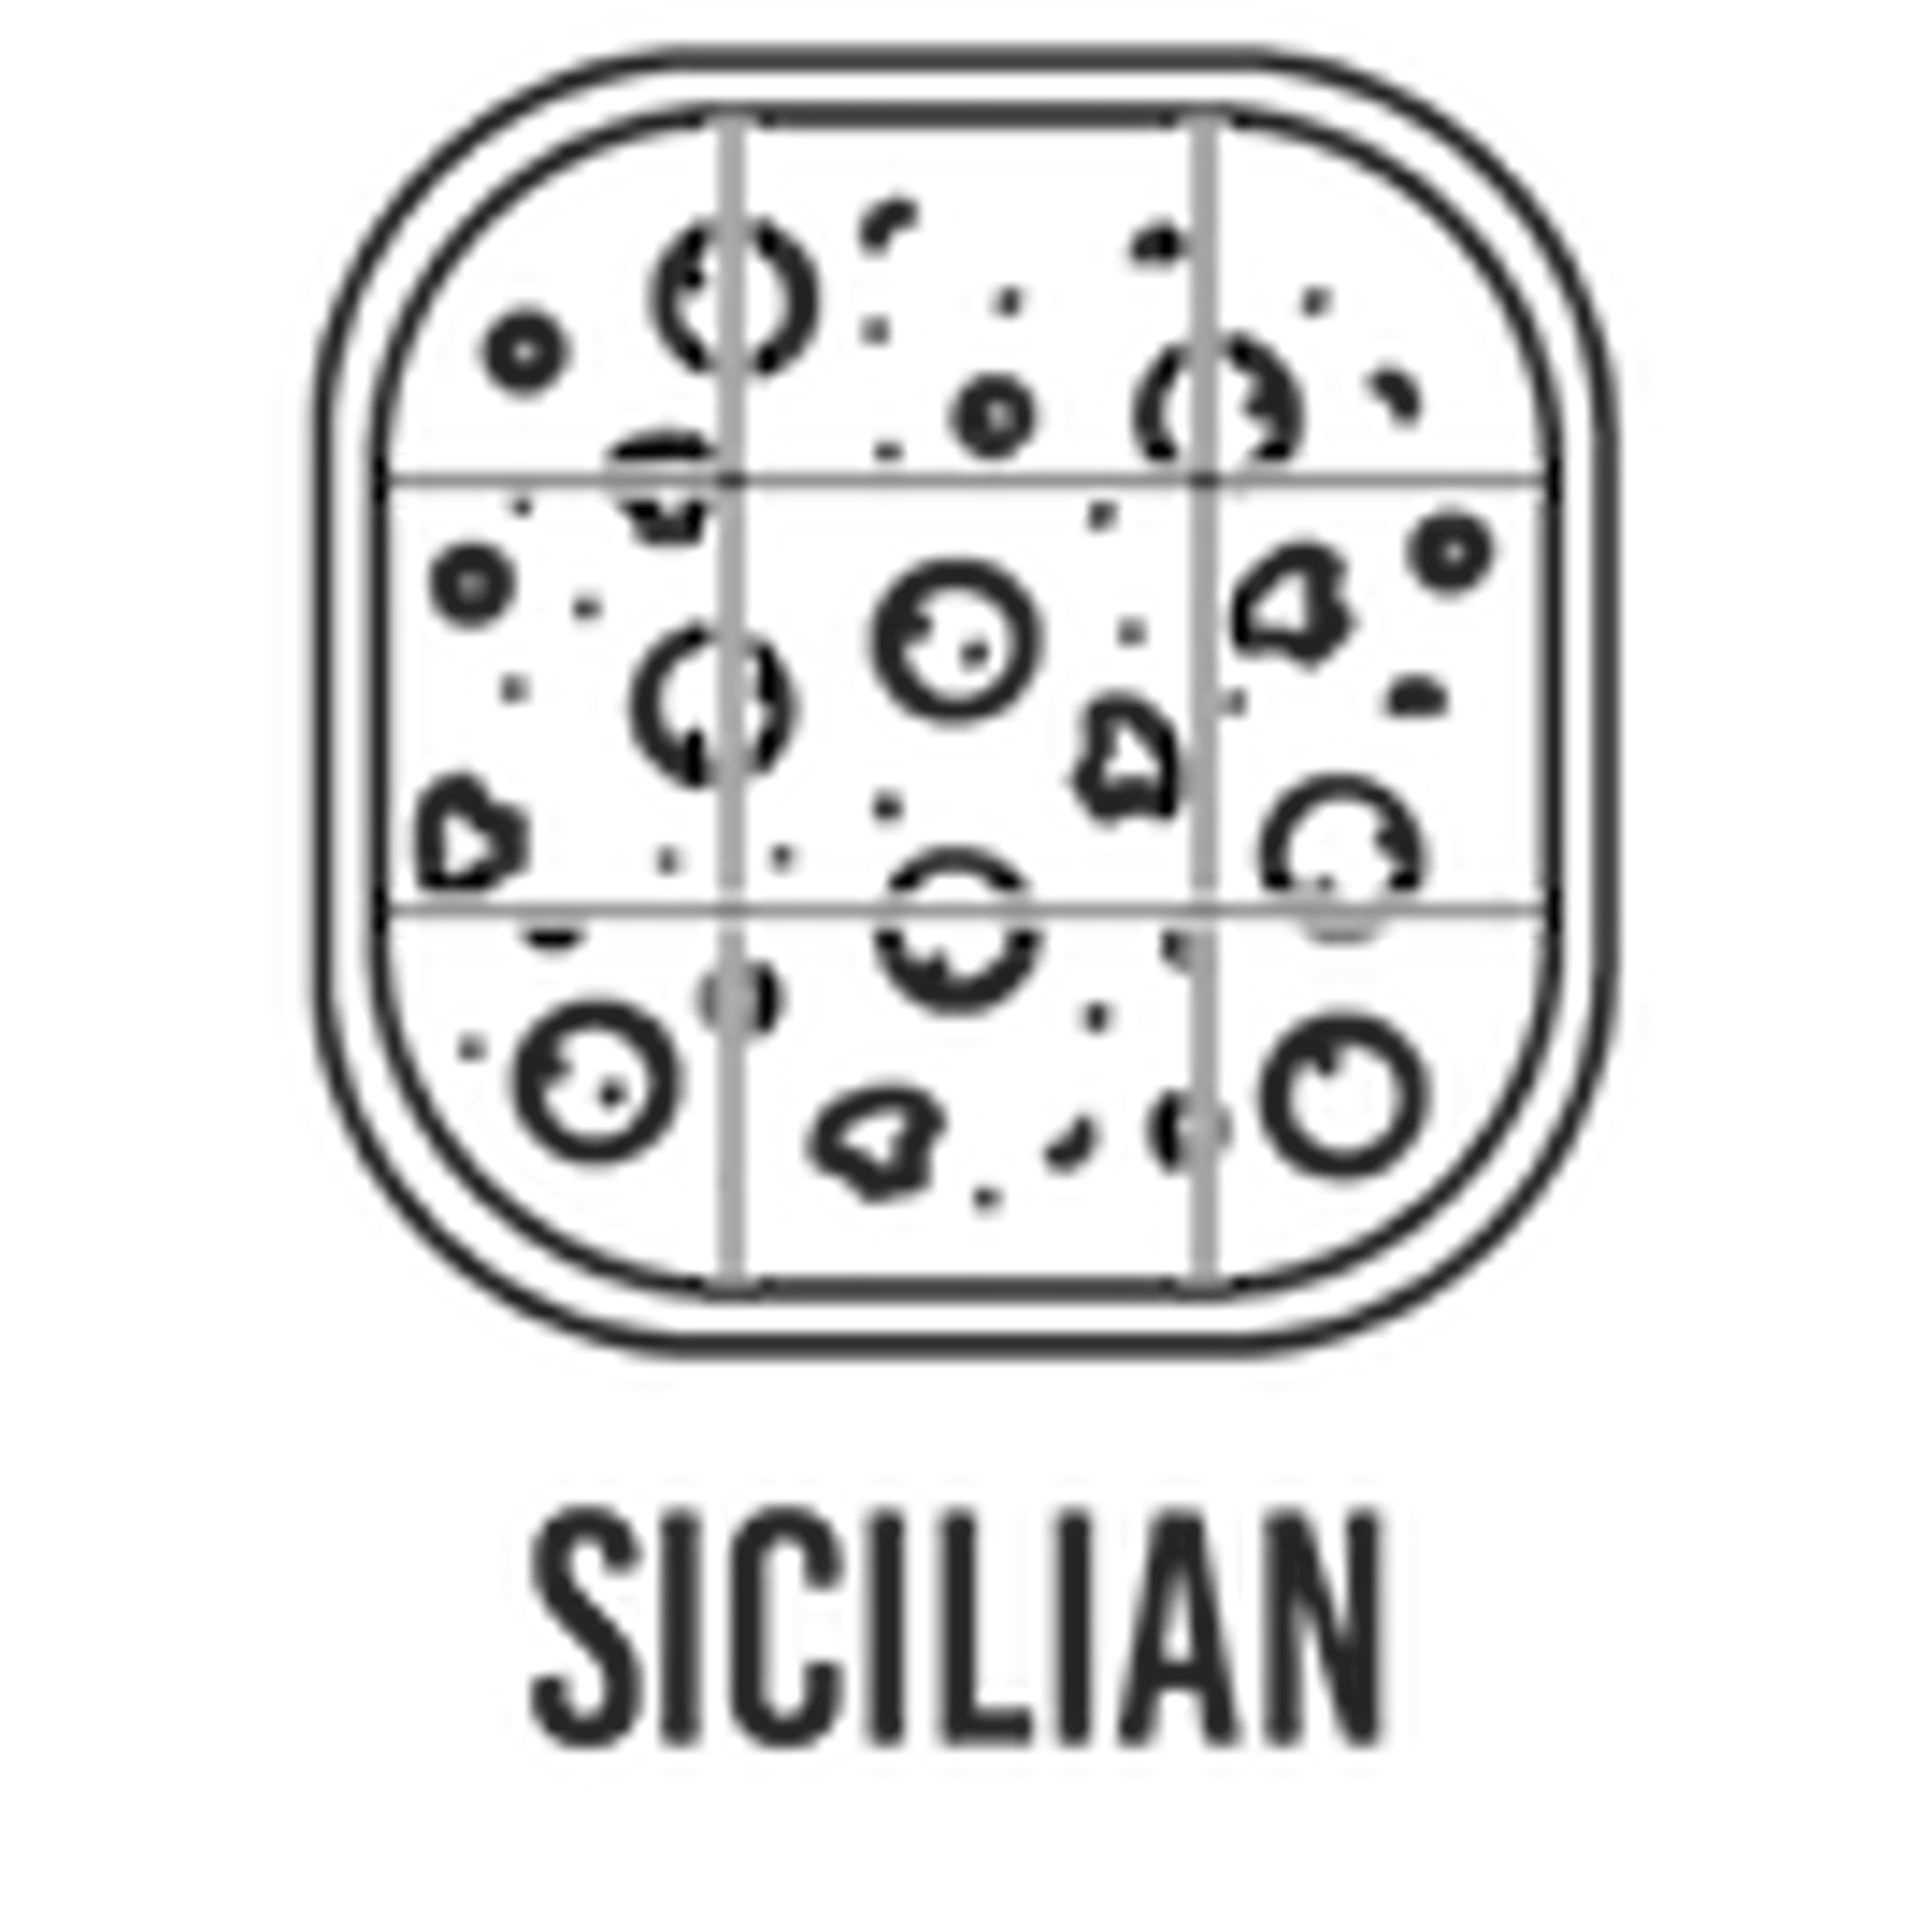 Sicilian Pizza's